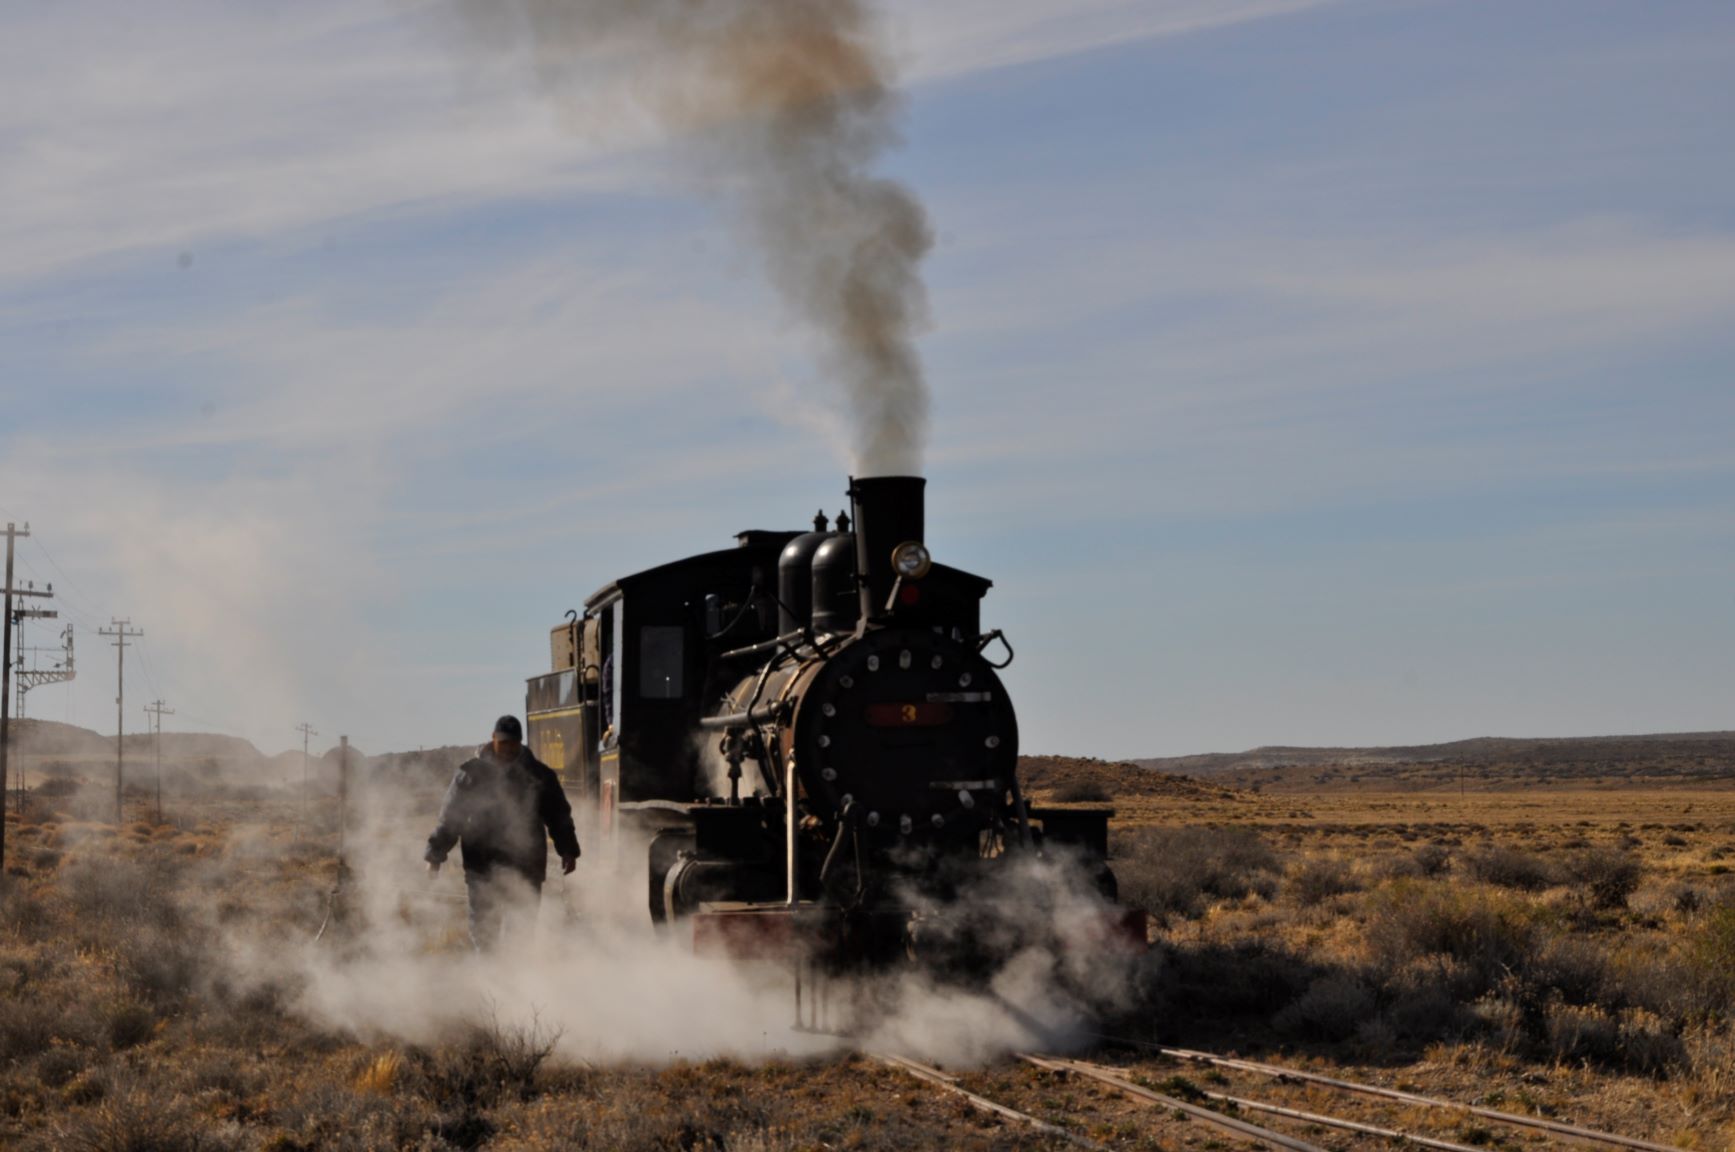 La imponente locomotora marchando y Juan emergiendo del vapor que la hace funcionar. El sábado 23 de enero volvió a surcar la meseta patagónica.  Foto: José Mellado. 